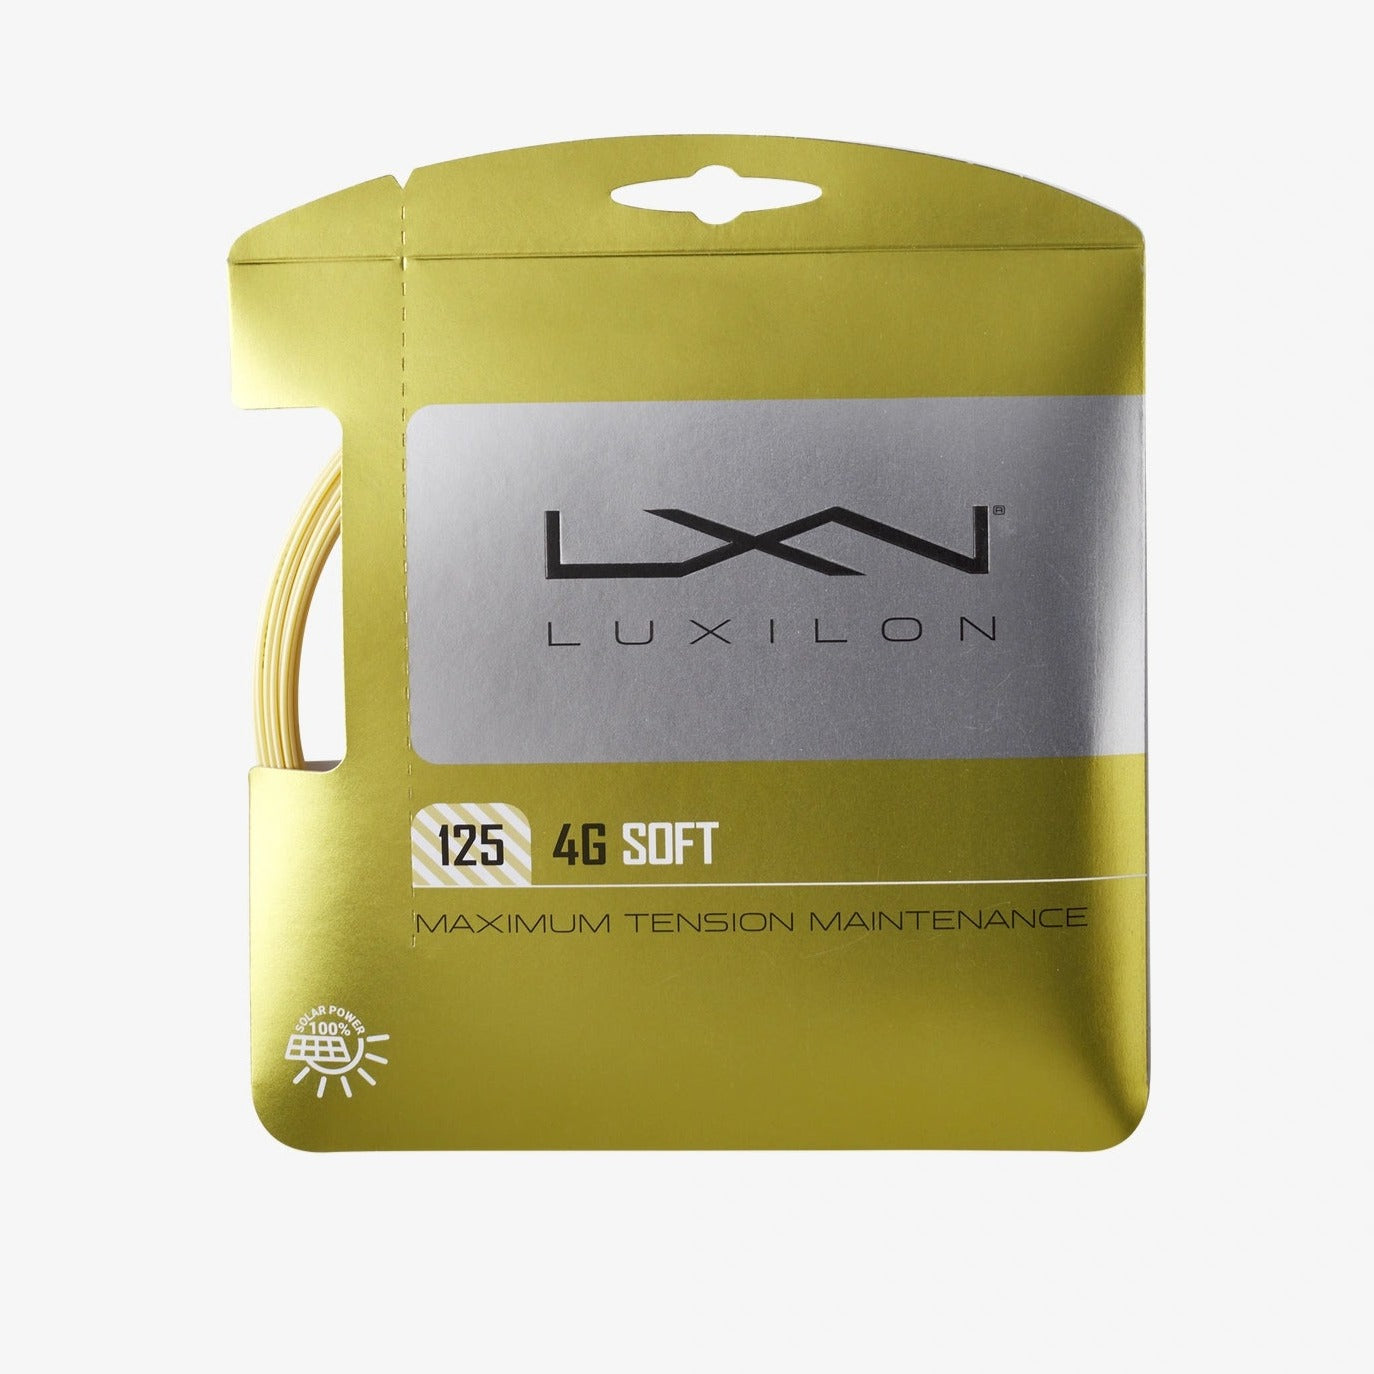 Luxilon 4G Soft